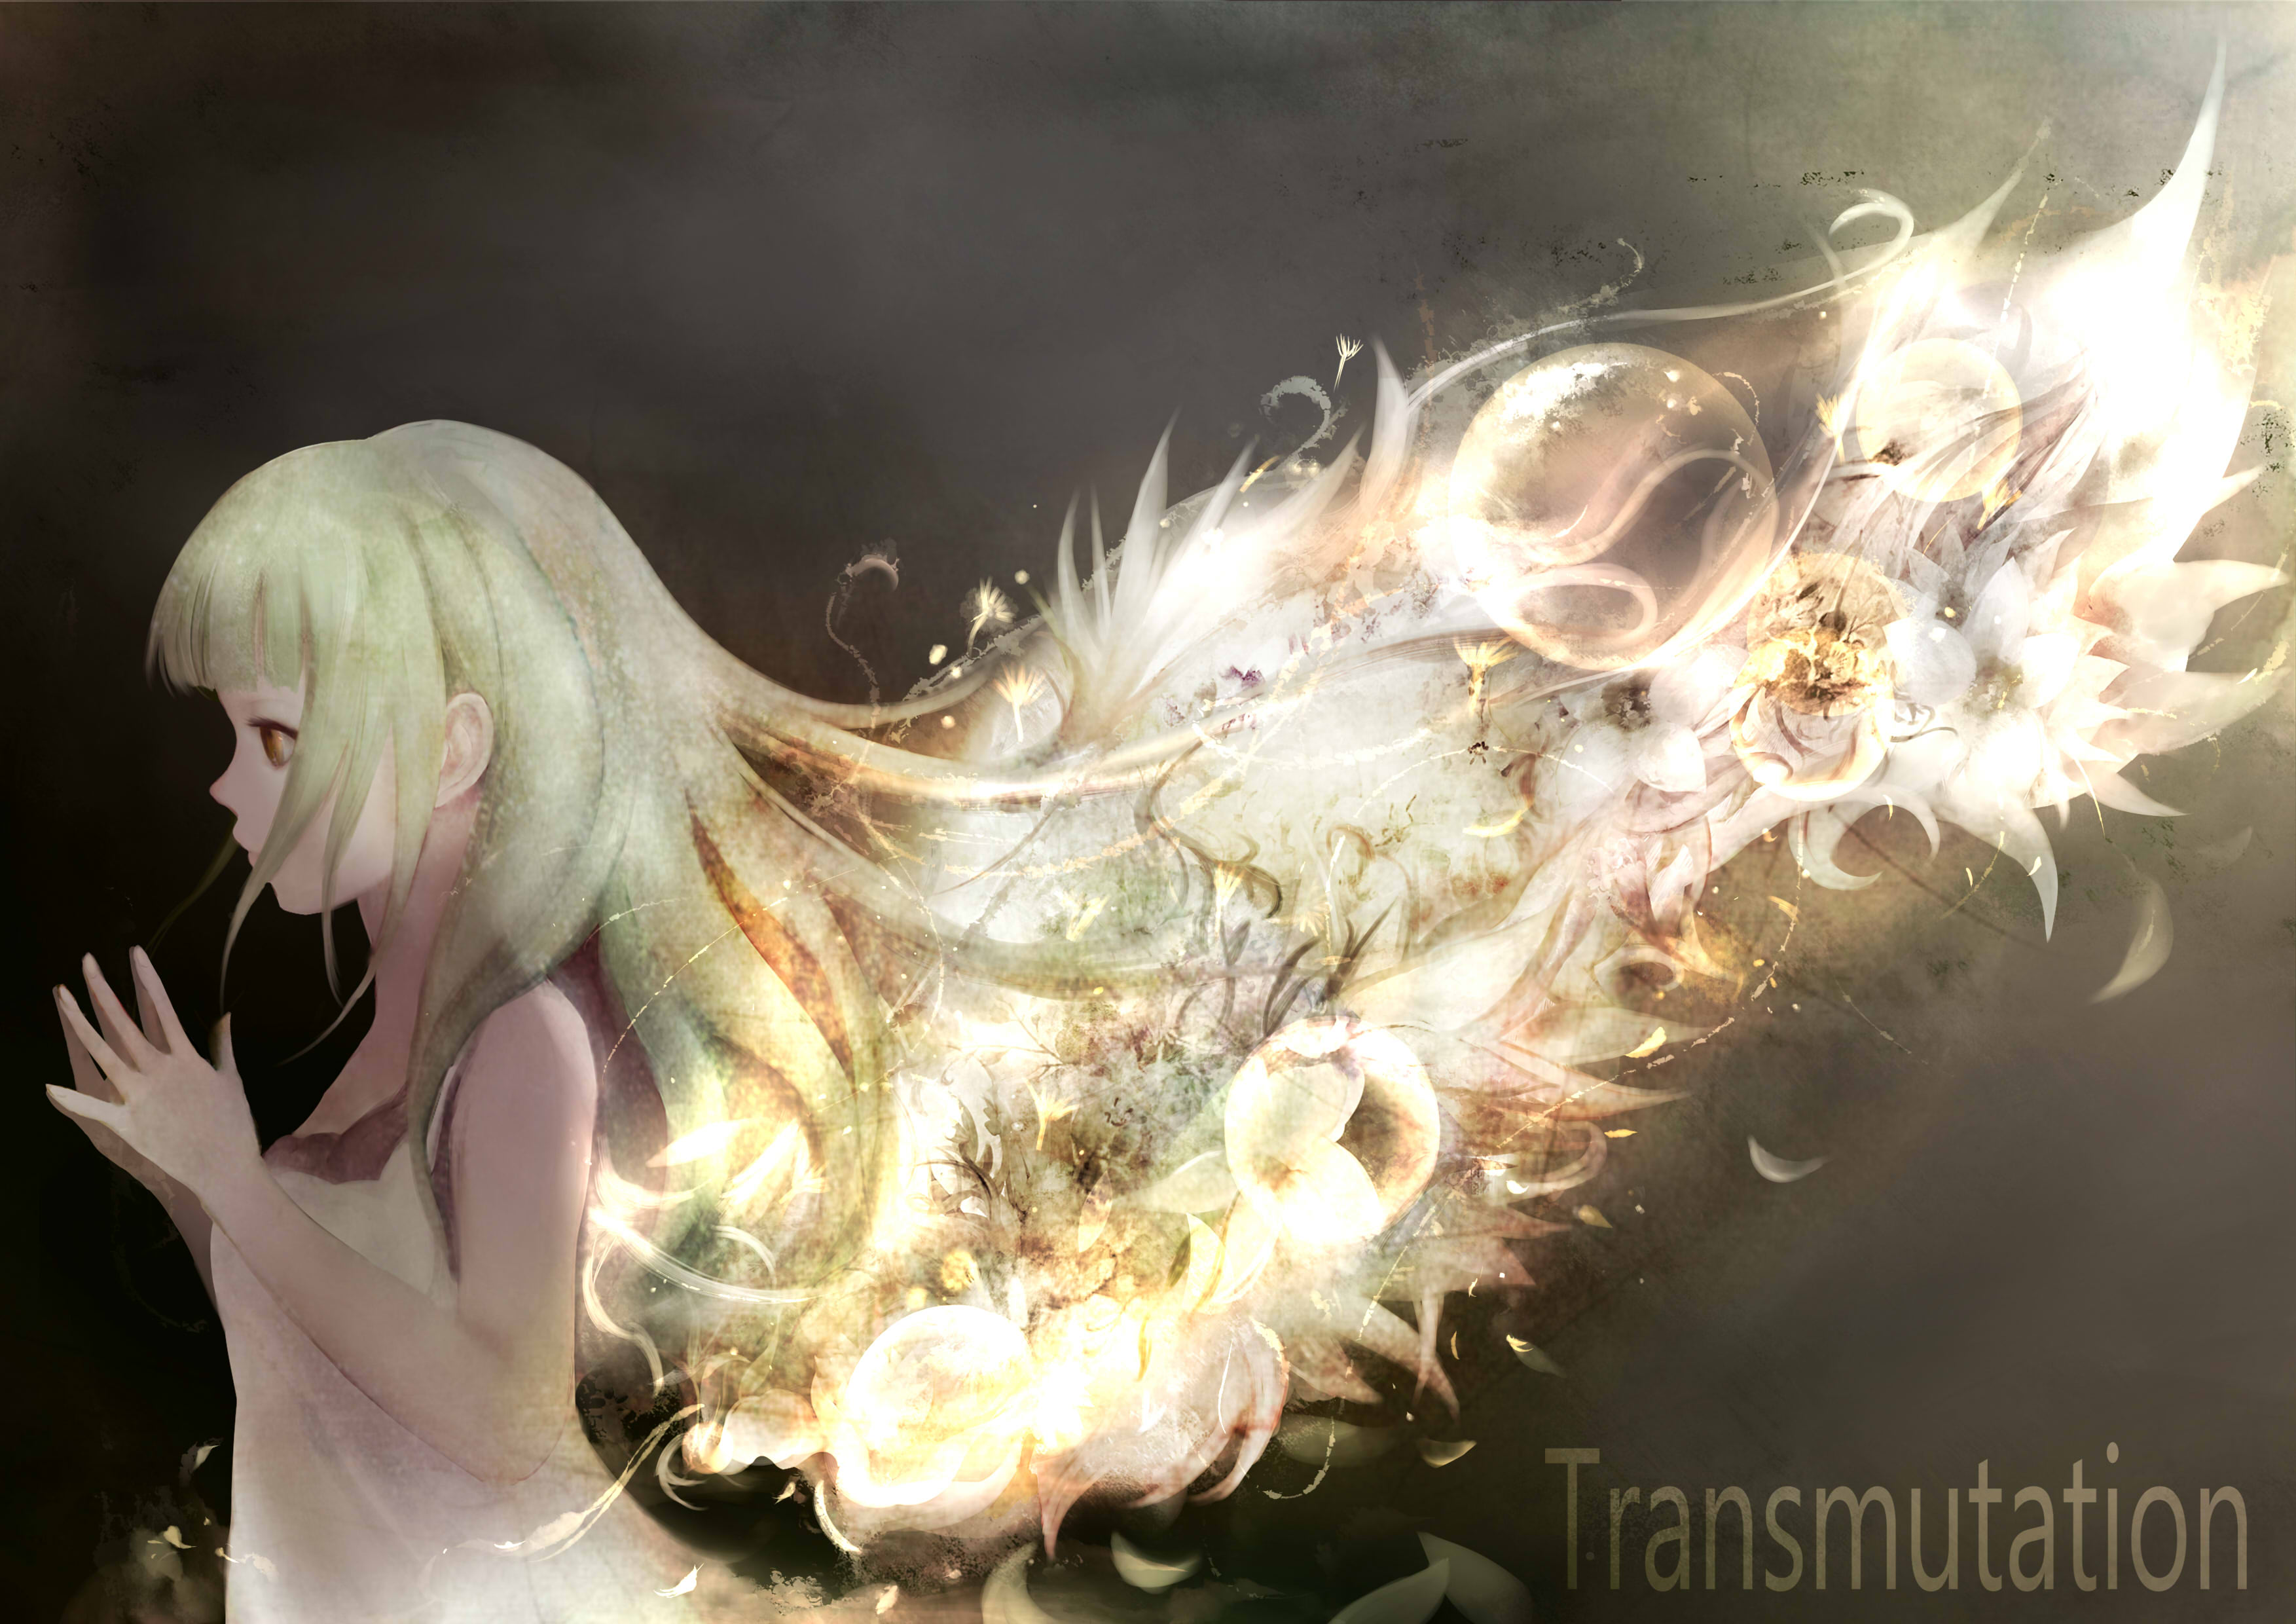 Transmutation by Zhang Xiao Bo